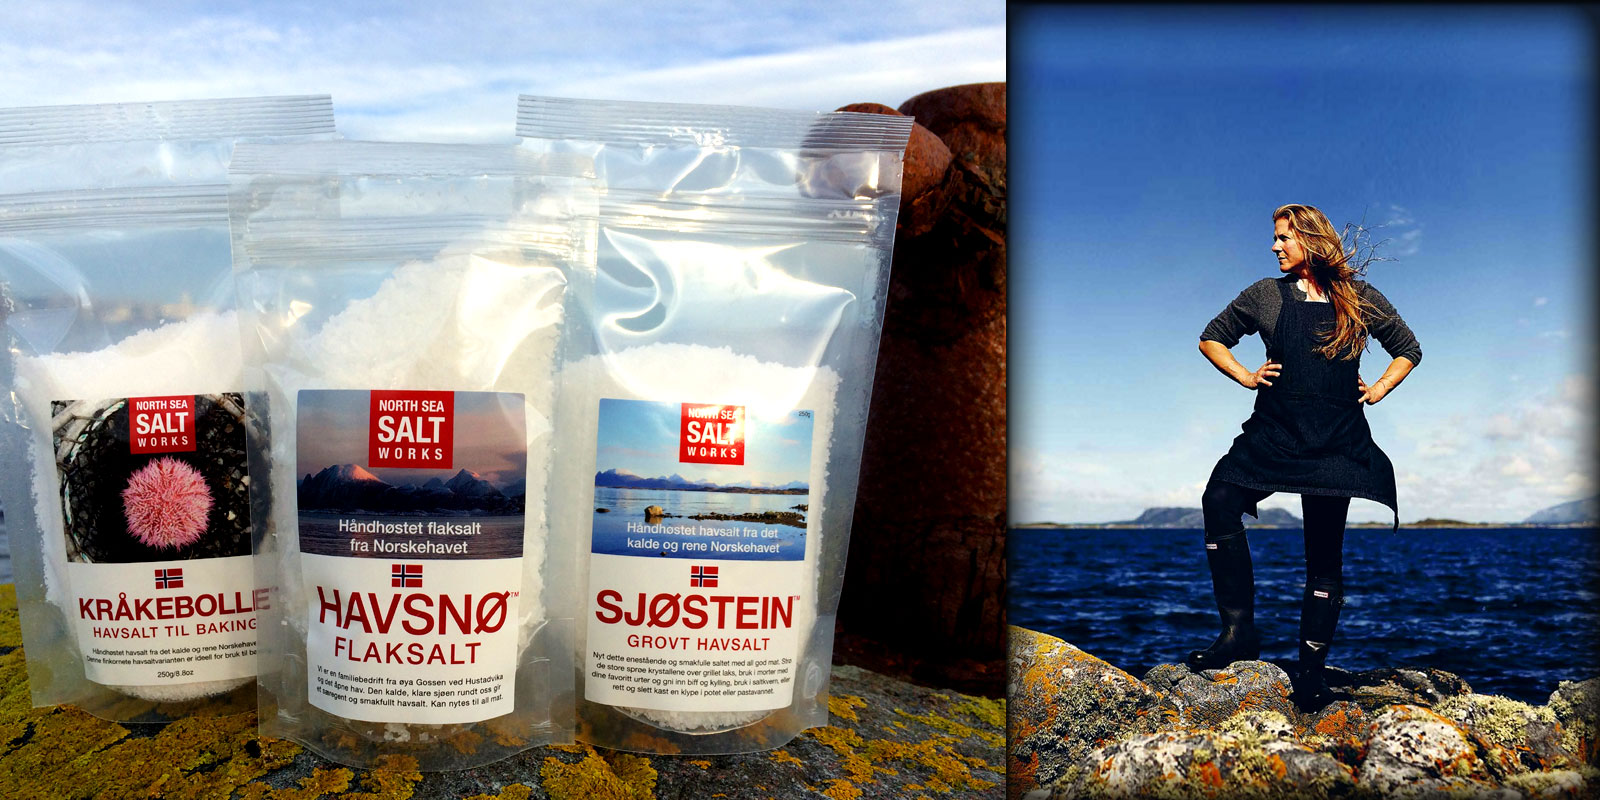 HAVSNO Salt fran North Sea Salt Works HAVSNO North Sea Salt Works: Upplev havets smak genom produktens renhet och dess produktion, rena Norge.